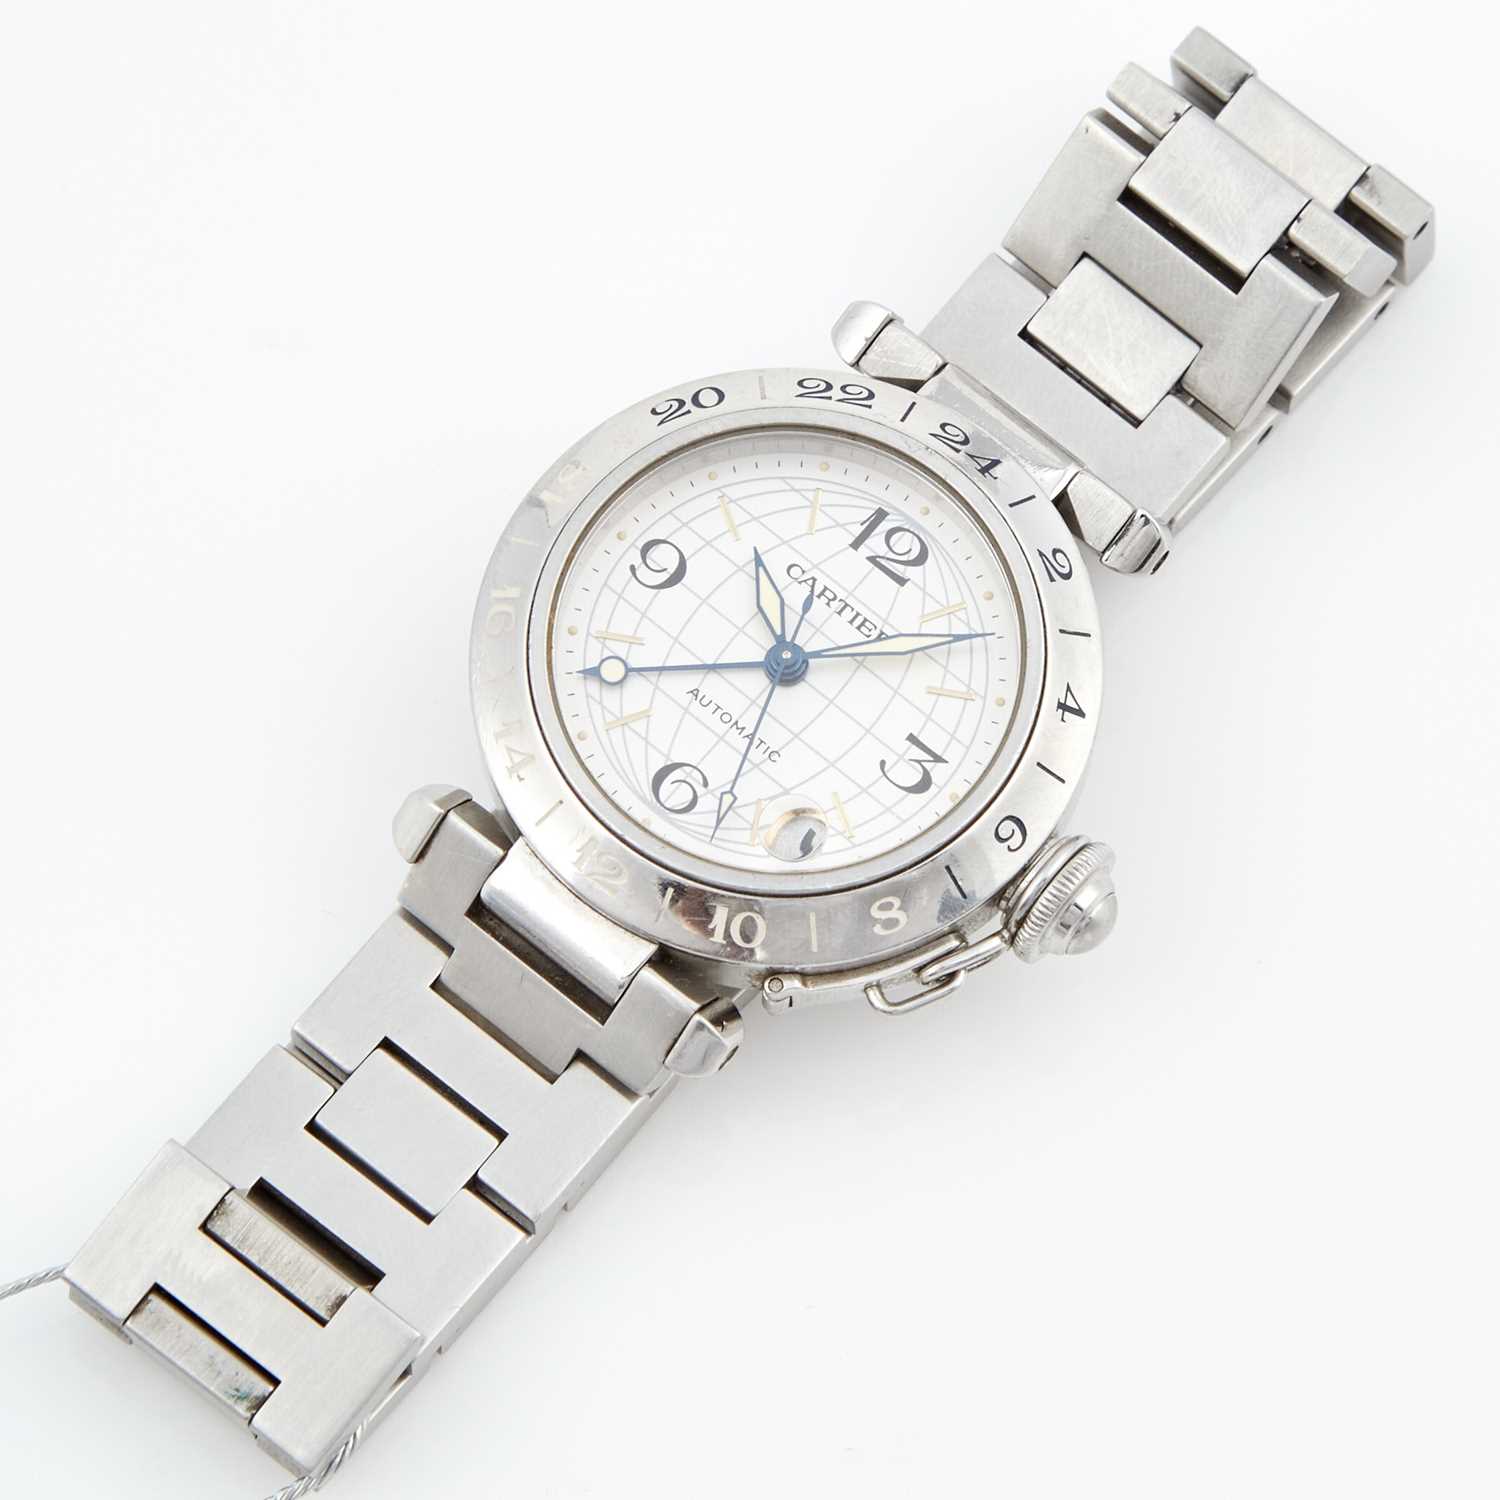 Lot 195 - Ladys Metal Bracelet Watch, 21 Jewels, Pasha de Cartier